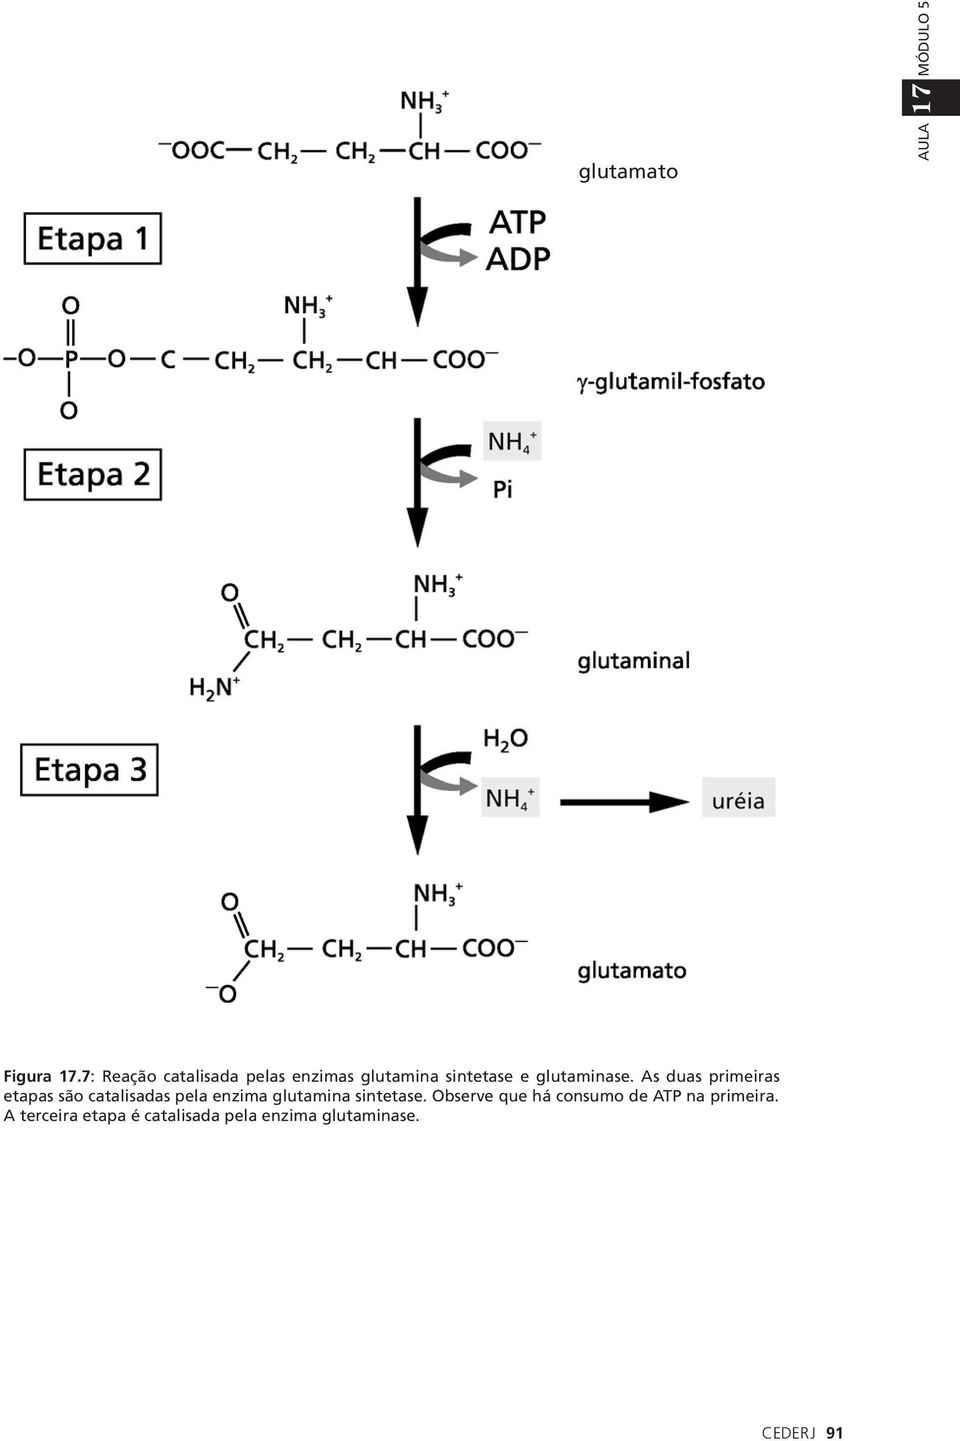 As duas primeiras etapas são catalisadas pela enzima glutamina